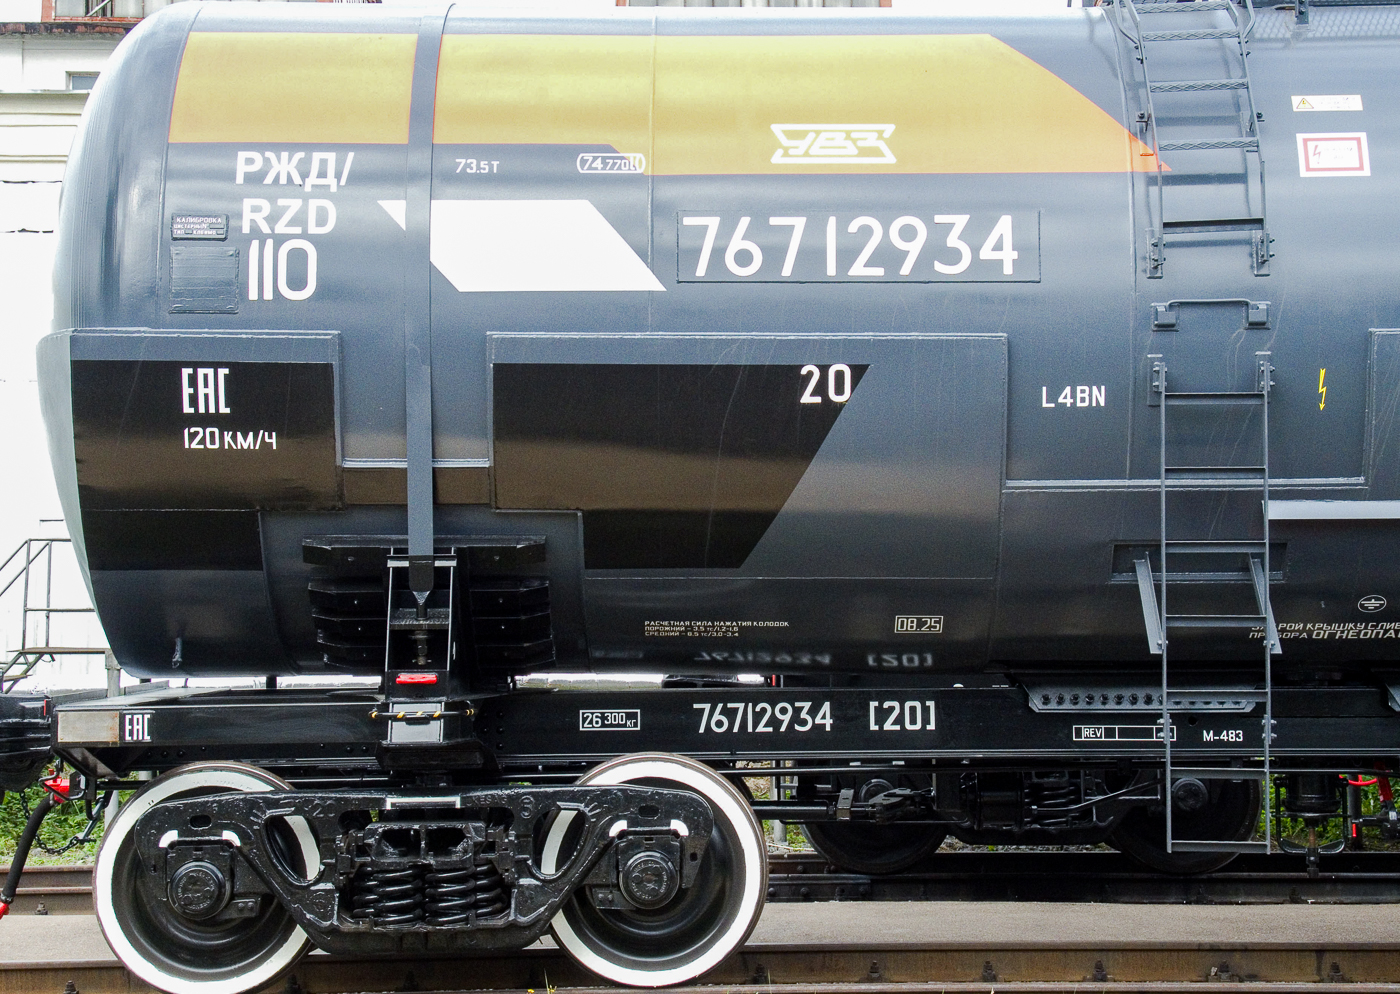 Уральское КБ вагоностроения разработало износостойкие резиновые уплотнения для цистерн